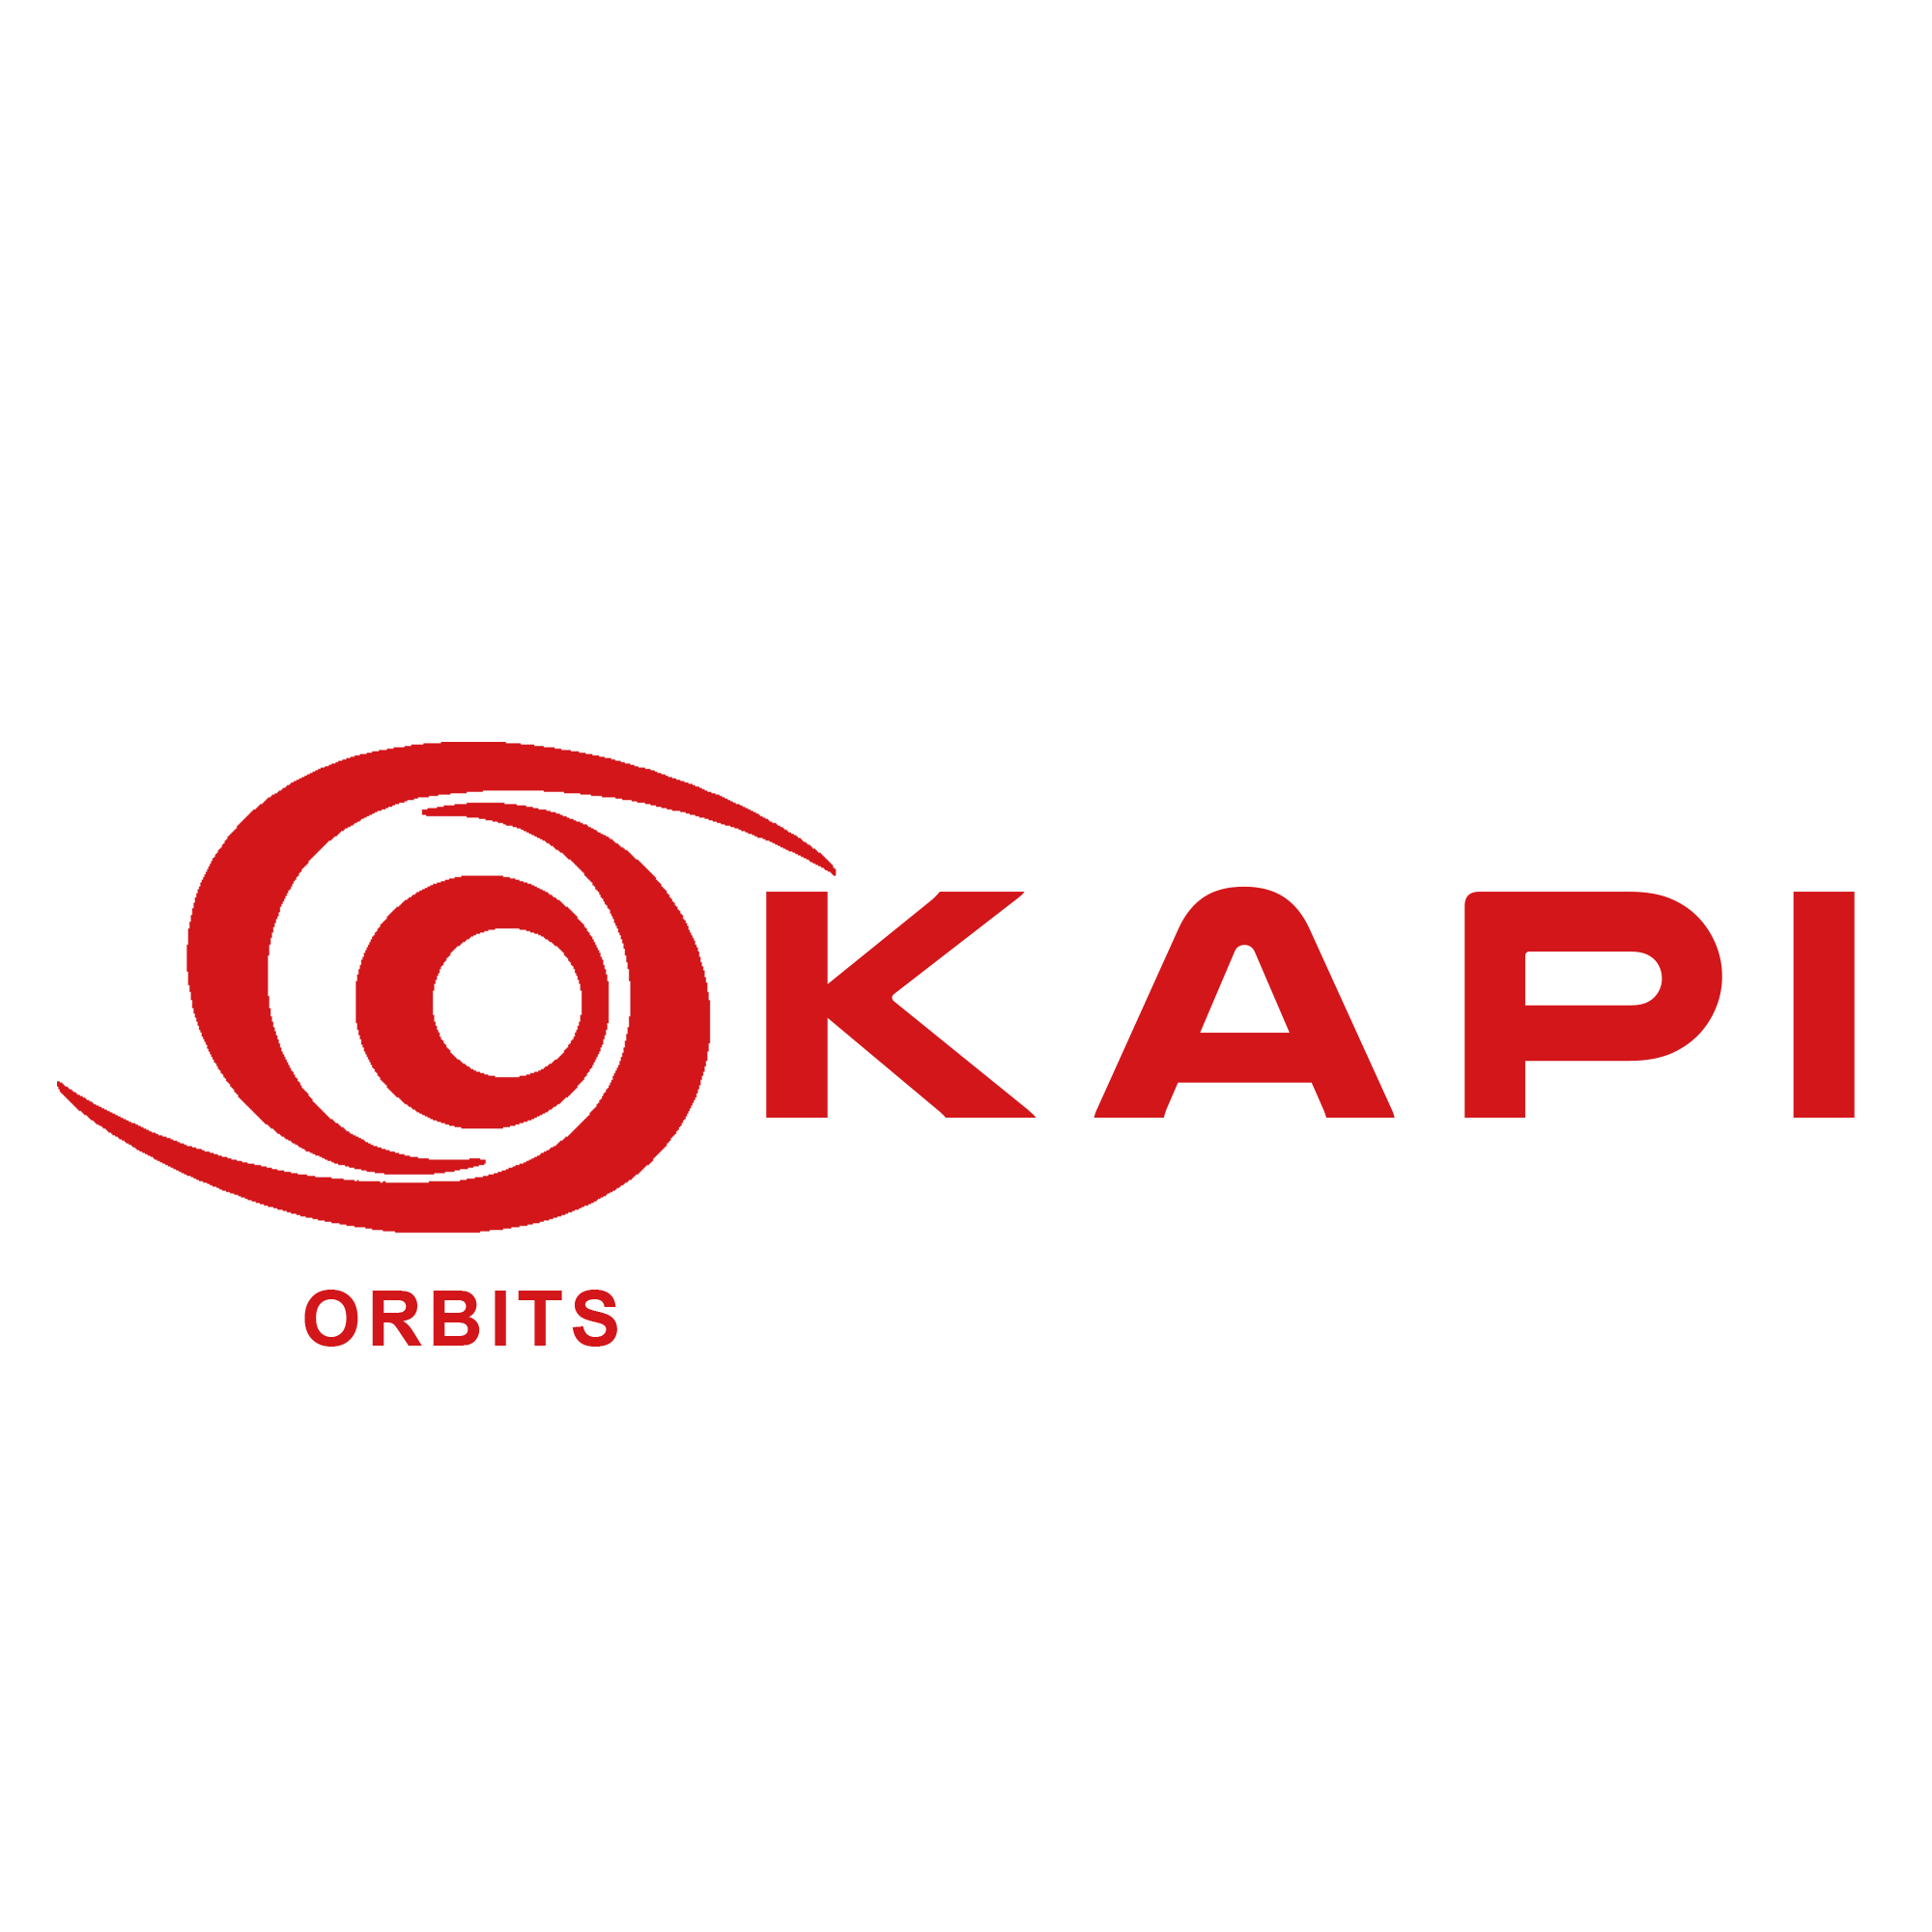 a03_okapi_orbits_red_001_01.png